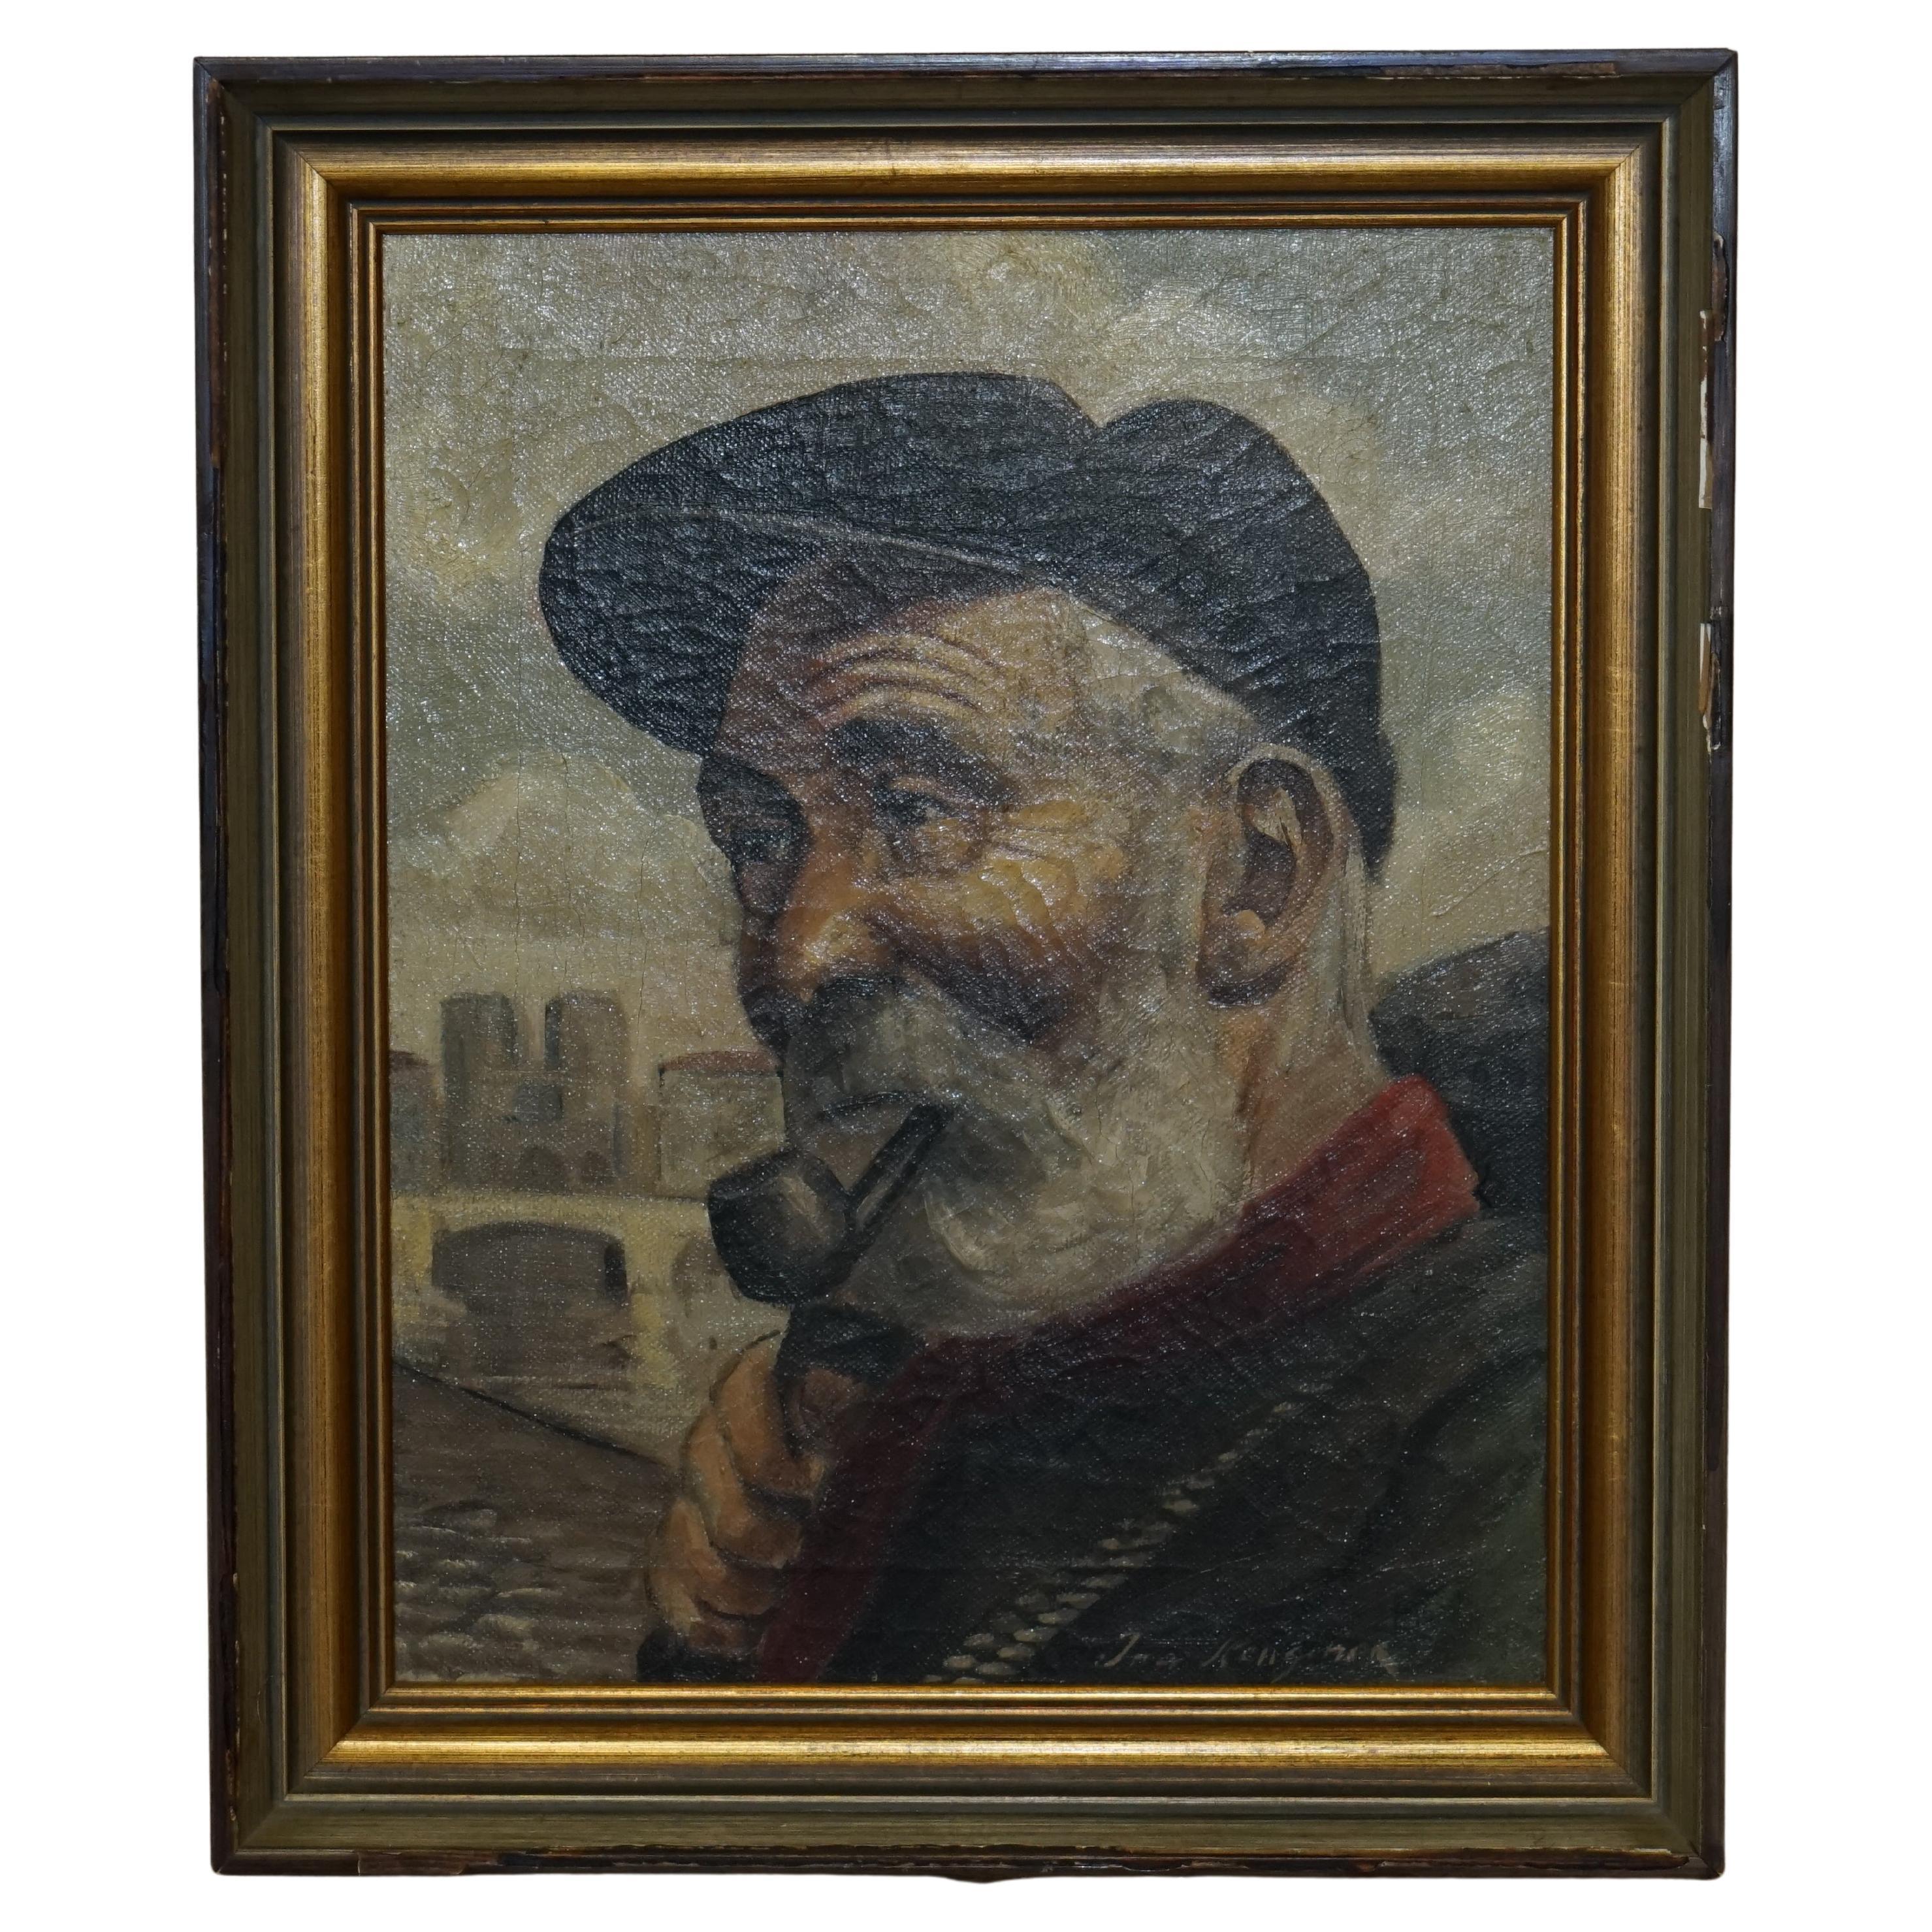 Jma Kensinck signiert Niederländisch Öl auf Leinwand Gemälde von alten Mann raucht eine Pfeife